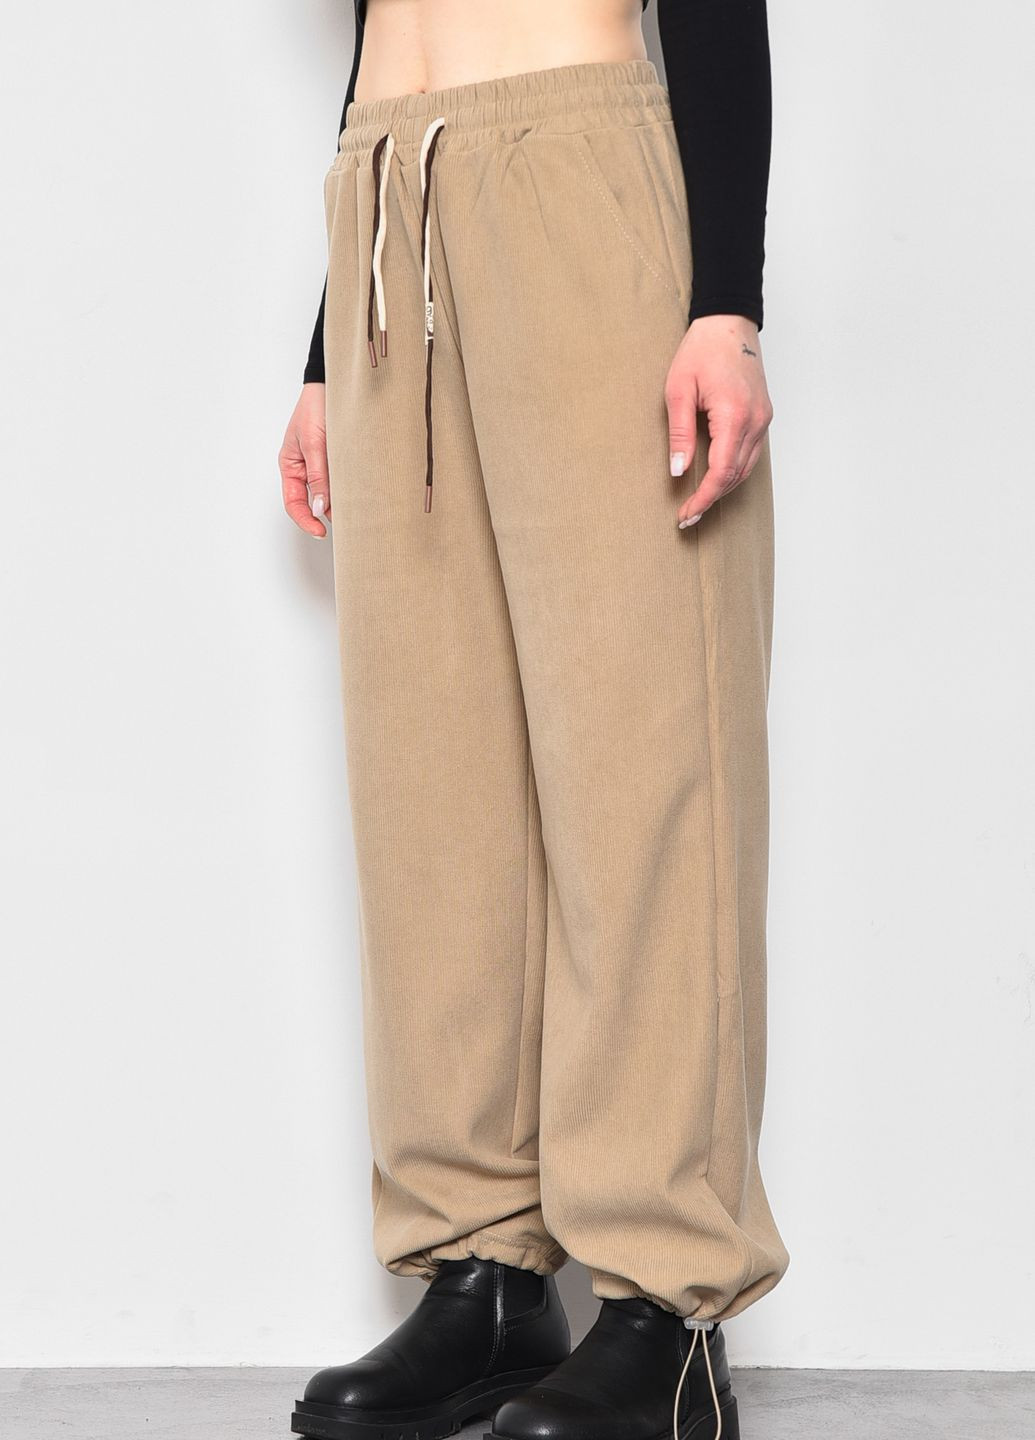 Штаны женские полубатальные расклешенные бежевого цвета Let's Shop (278050405)